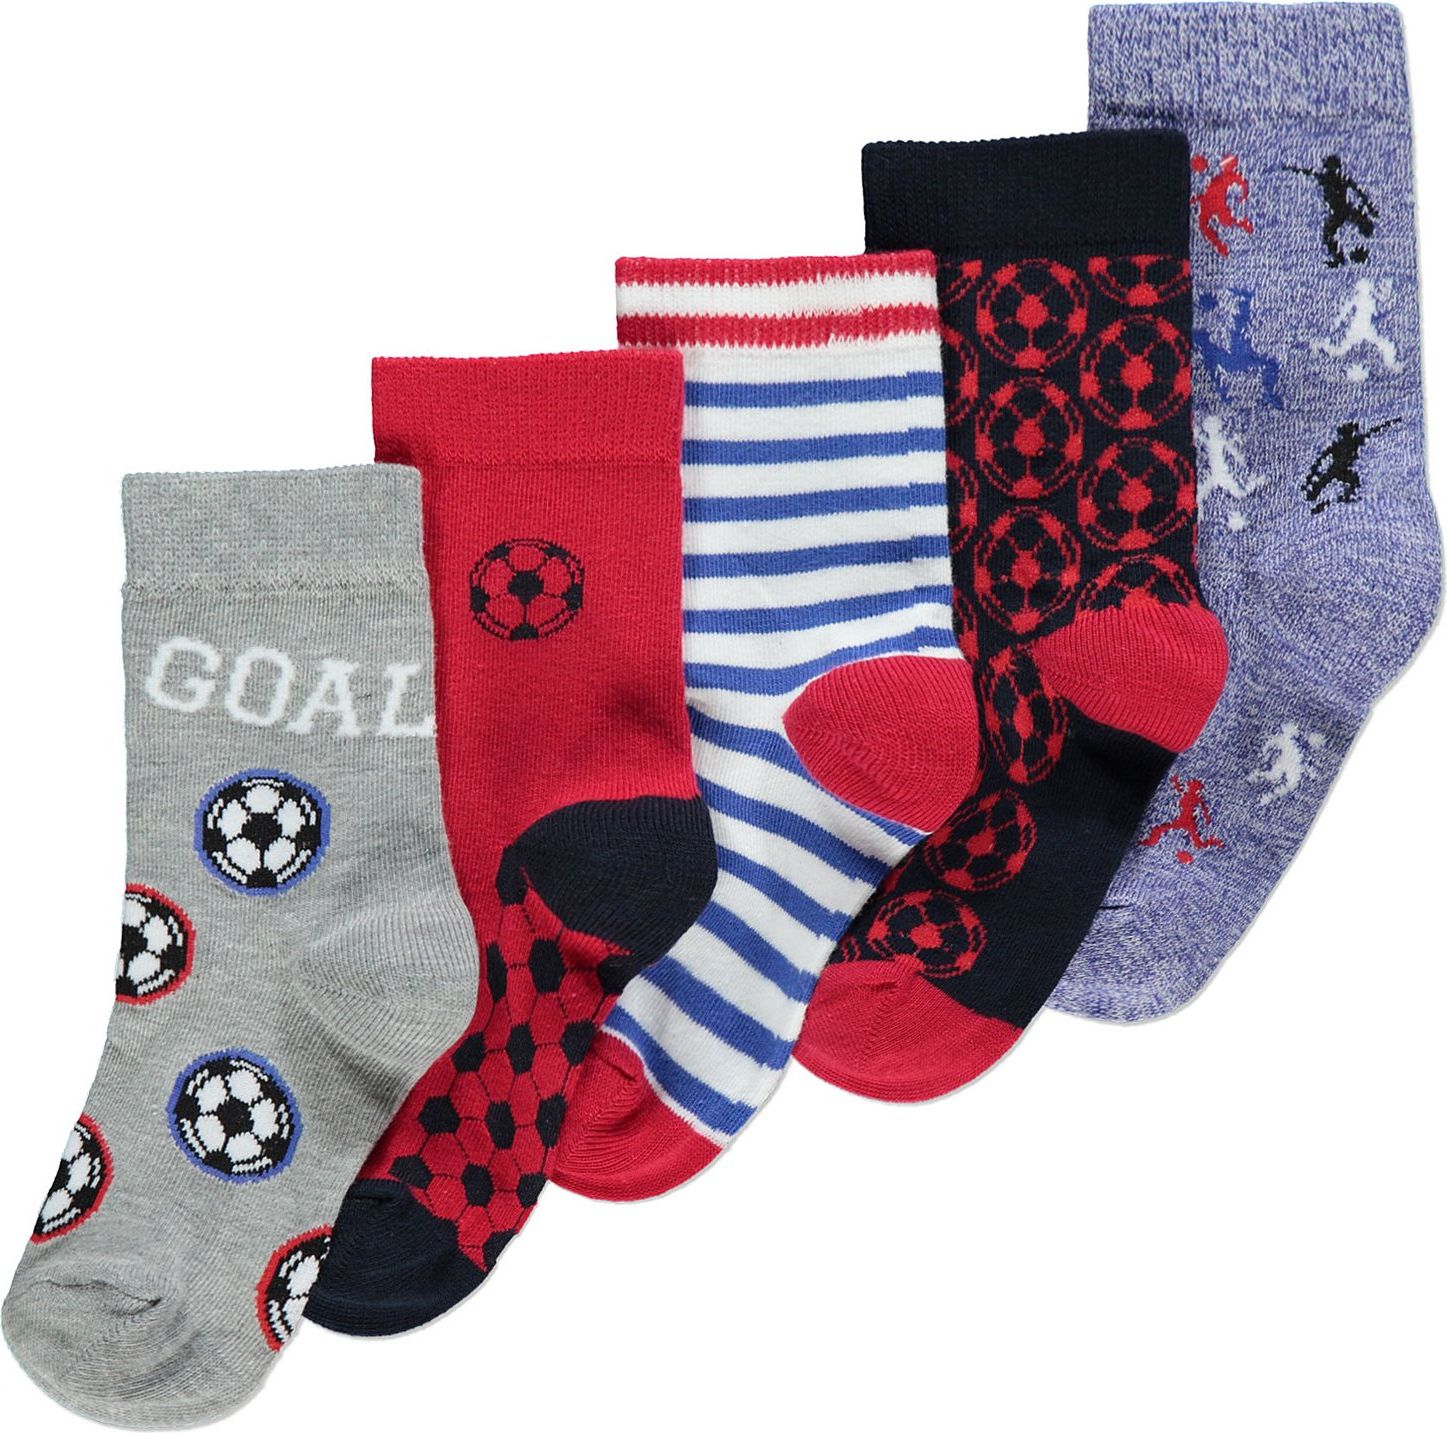 Chlapecké ponožky GEORGE, 5ks v balení, motiv fotbal Velikost: EU 19 - 22.5 (1.5 - 2 roky) - obrázek 1